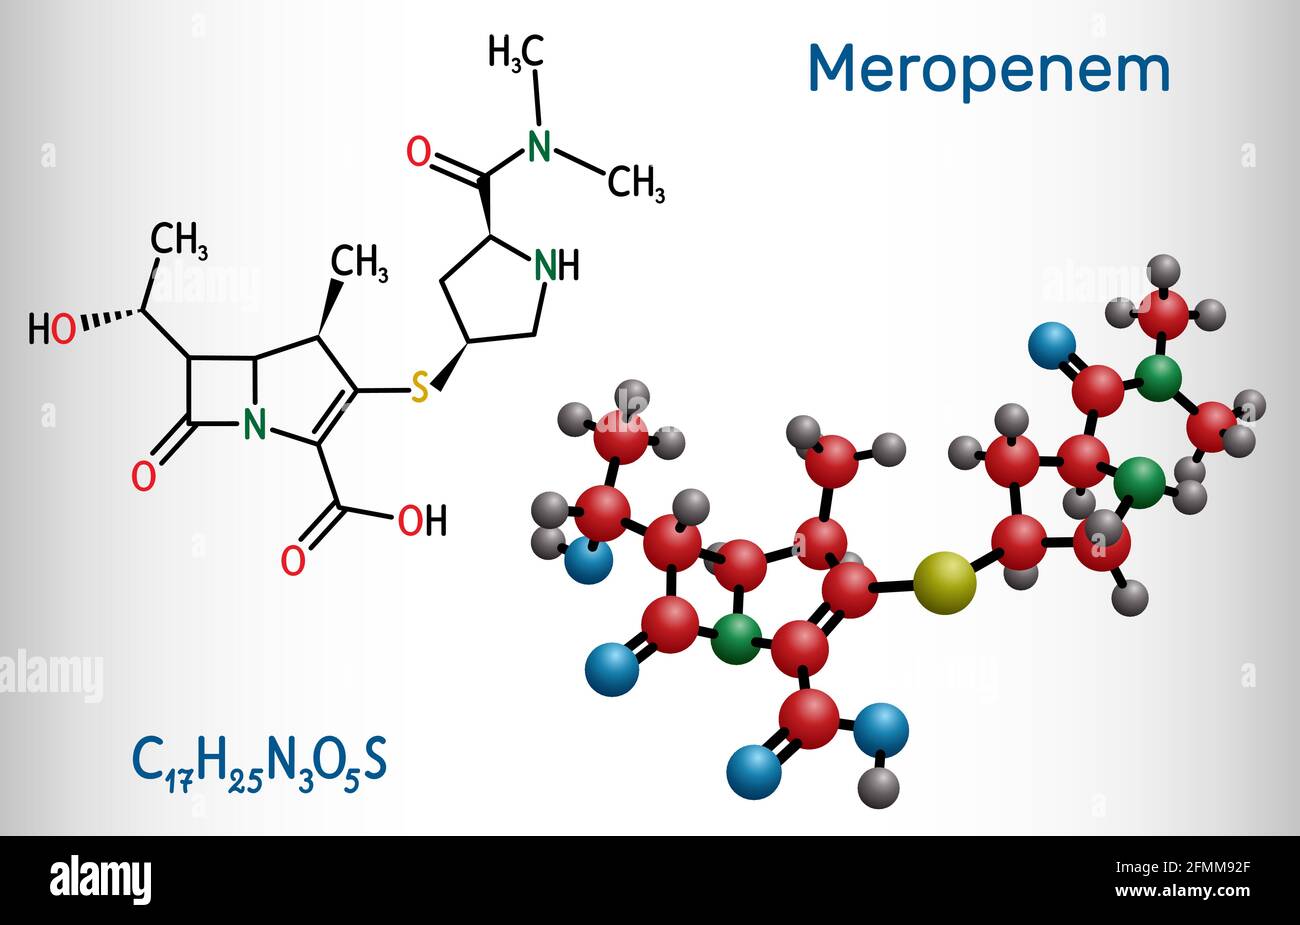 Molécule de meropenem. Il s'agit d'un antibiotique carbapénème à large spectre. Formule chimique structurelle et modèle moléculaire. Illustration vectorielle Illustration de Vecteur